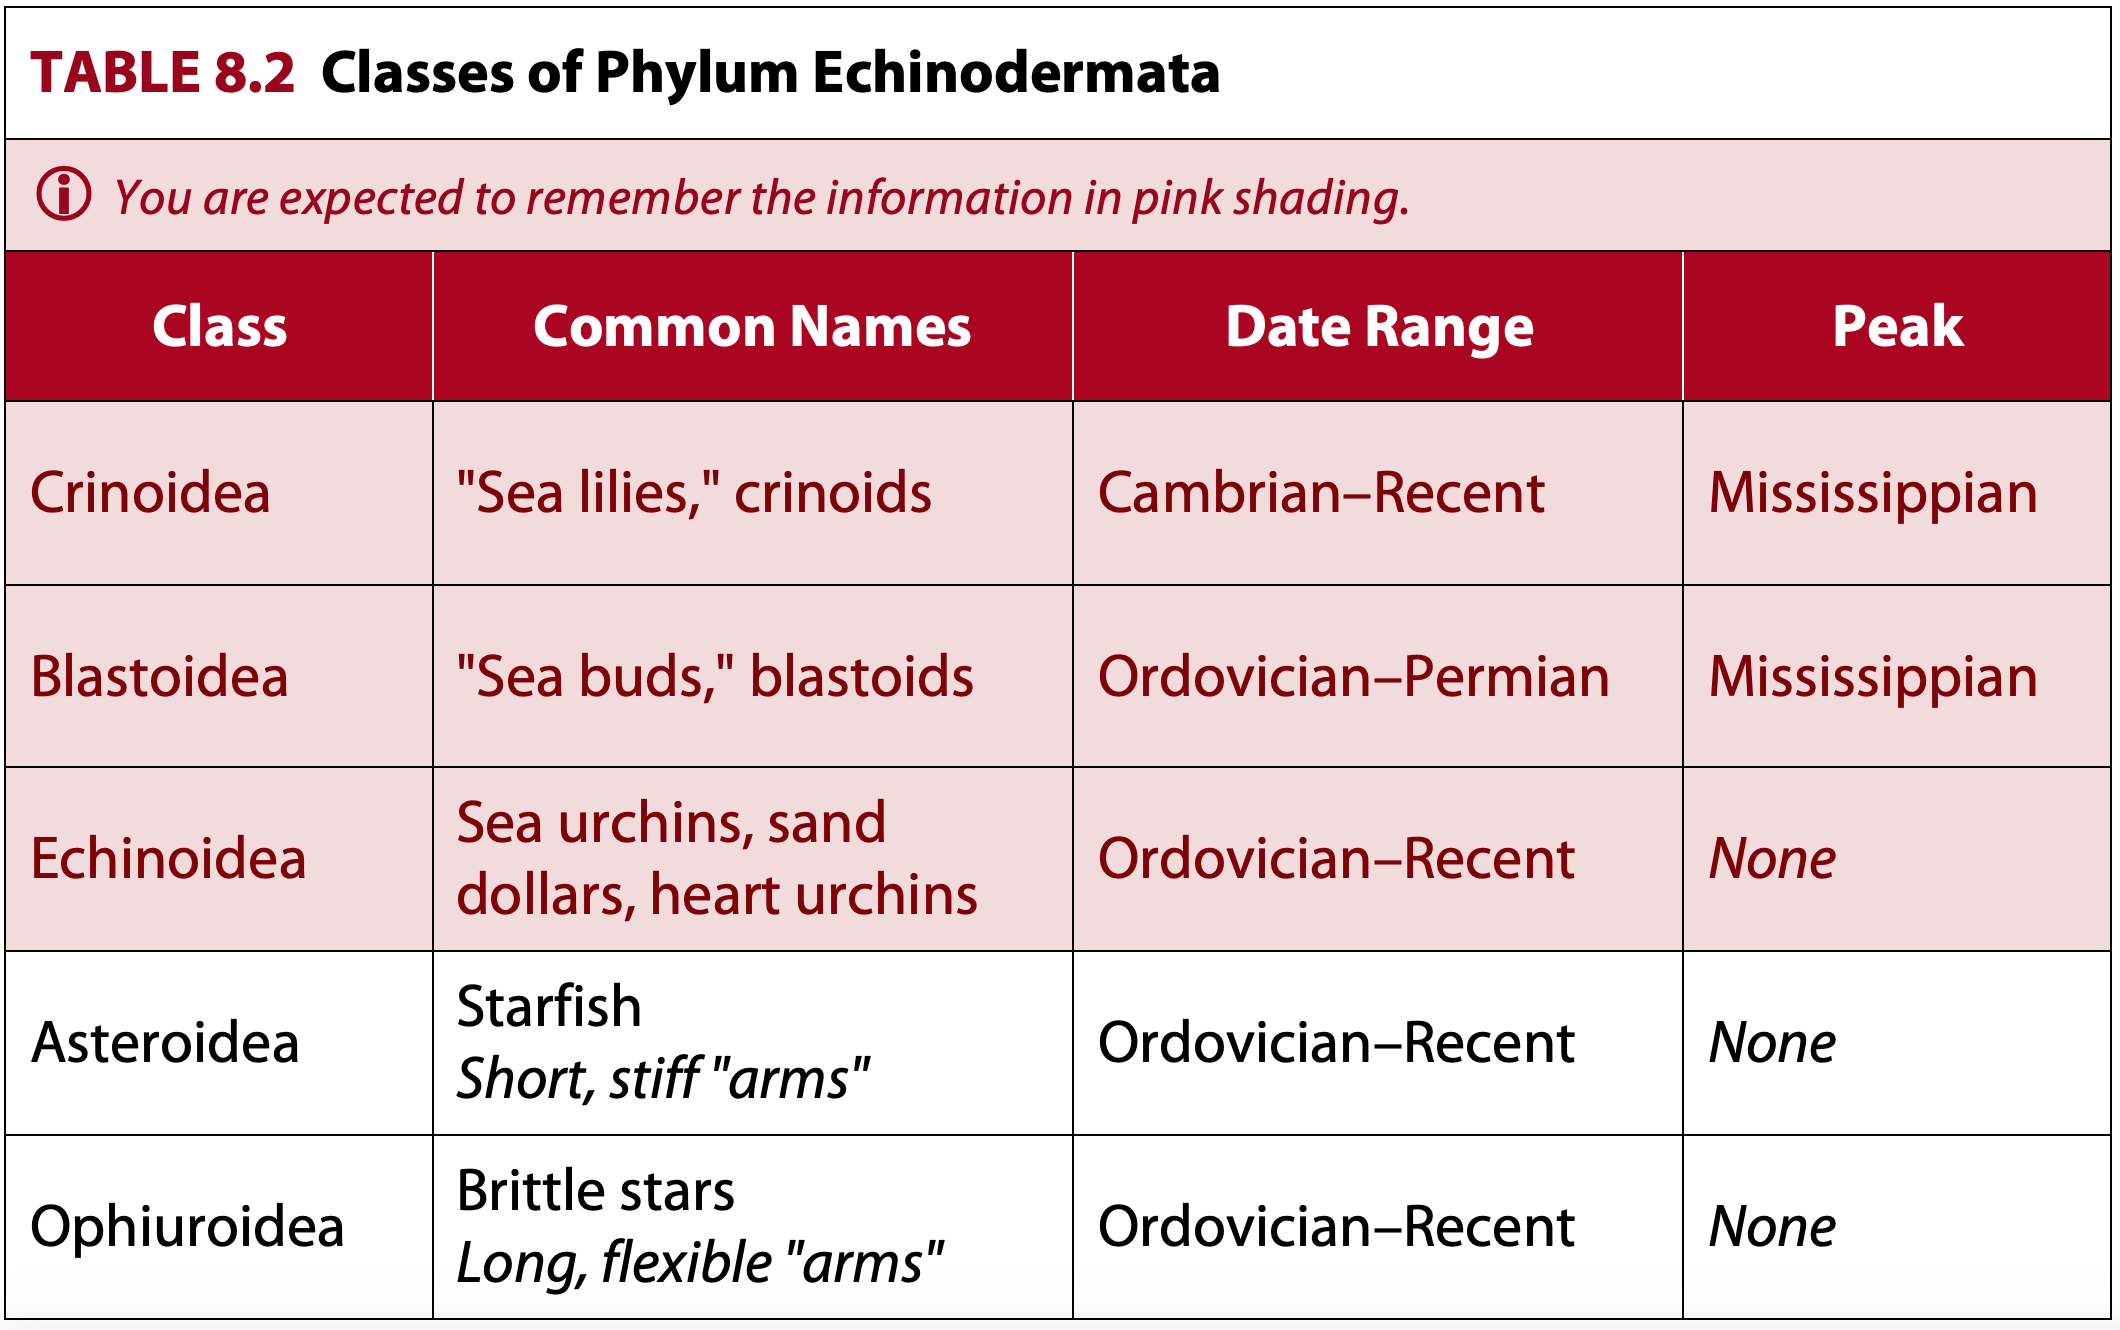 Classes of Phylum Echinodermata